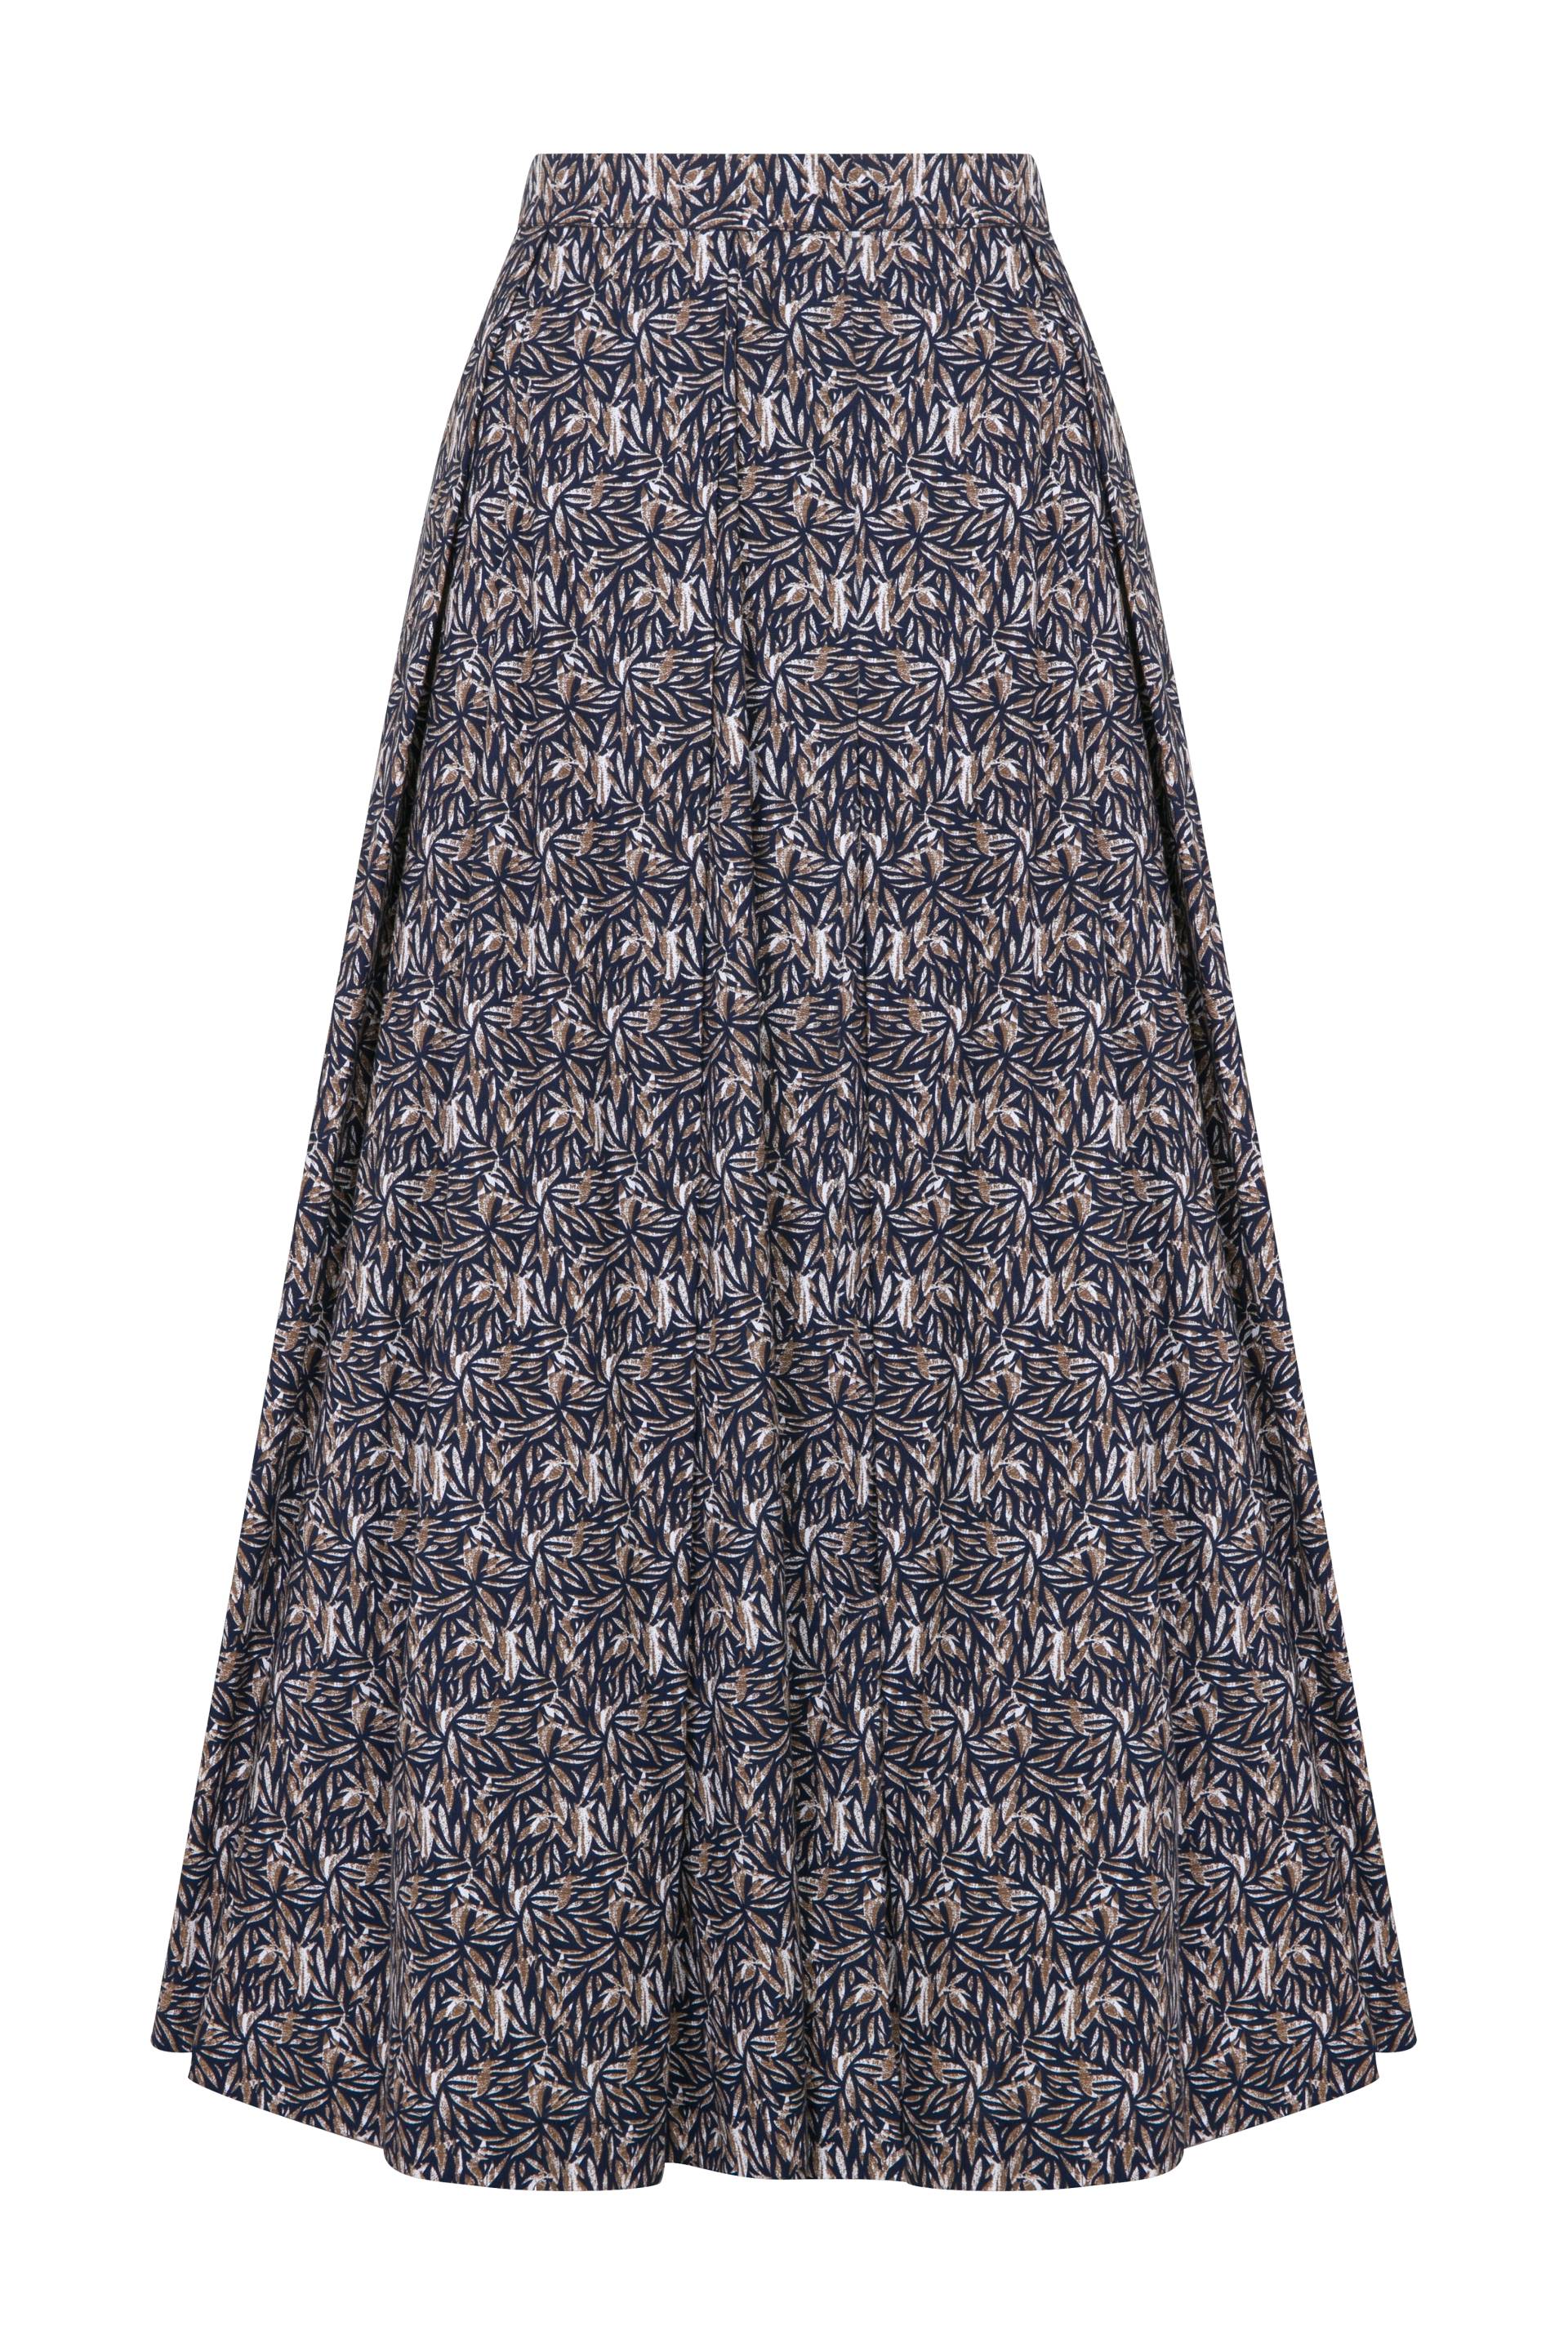 June Printed Cotton Midi Skirt in Brown von Nazli Ceren